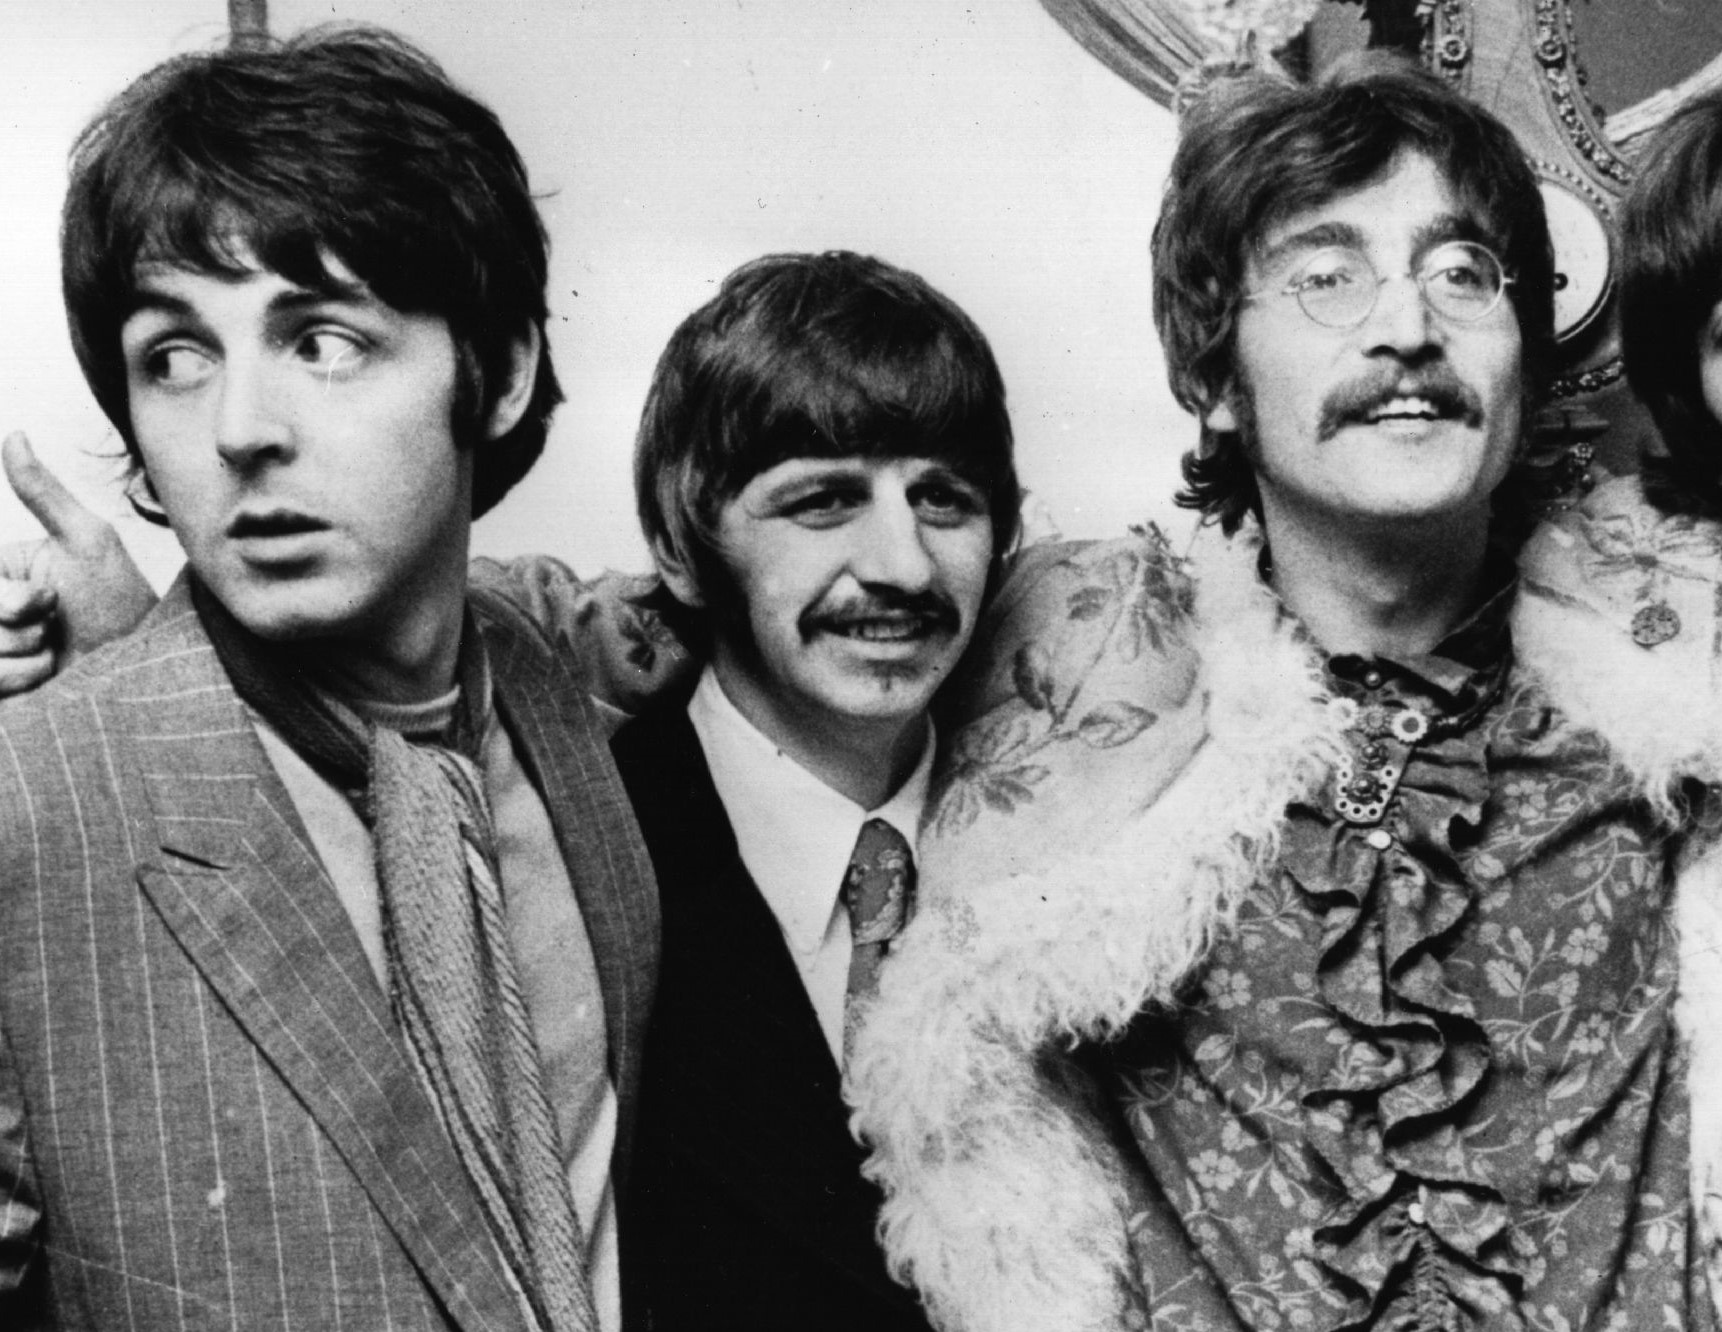 The Beatles' Paul McCartney, Ringo Starr, and John Lennon in black-and-white